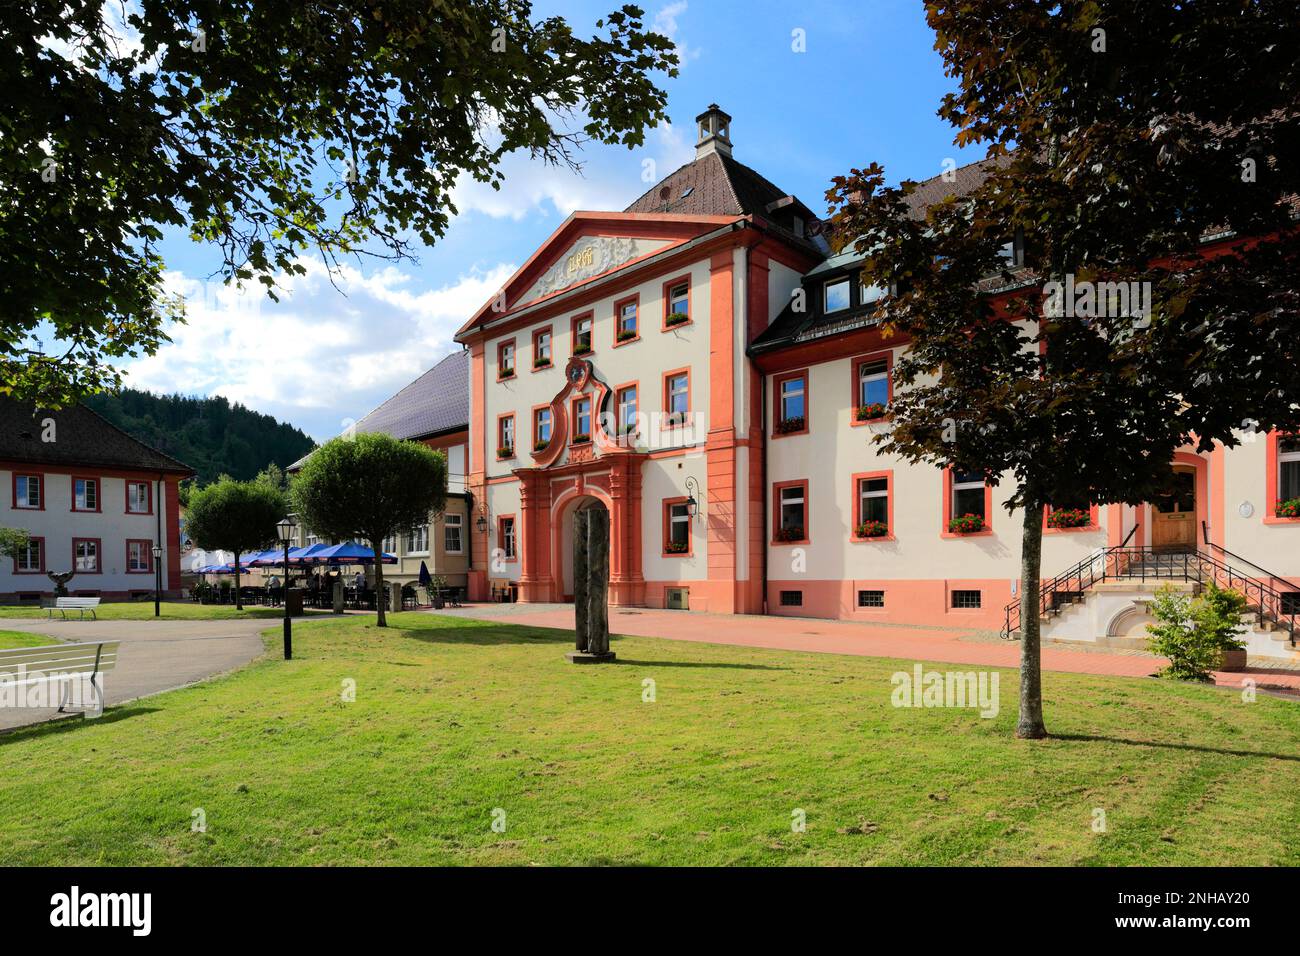 Hôtel de ville, St Blasien Ville, Forêt Noire, Bade-Wurtemberg, Allemagne, Europe Banque D'Images